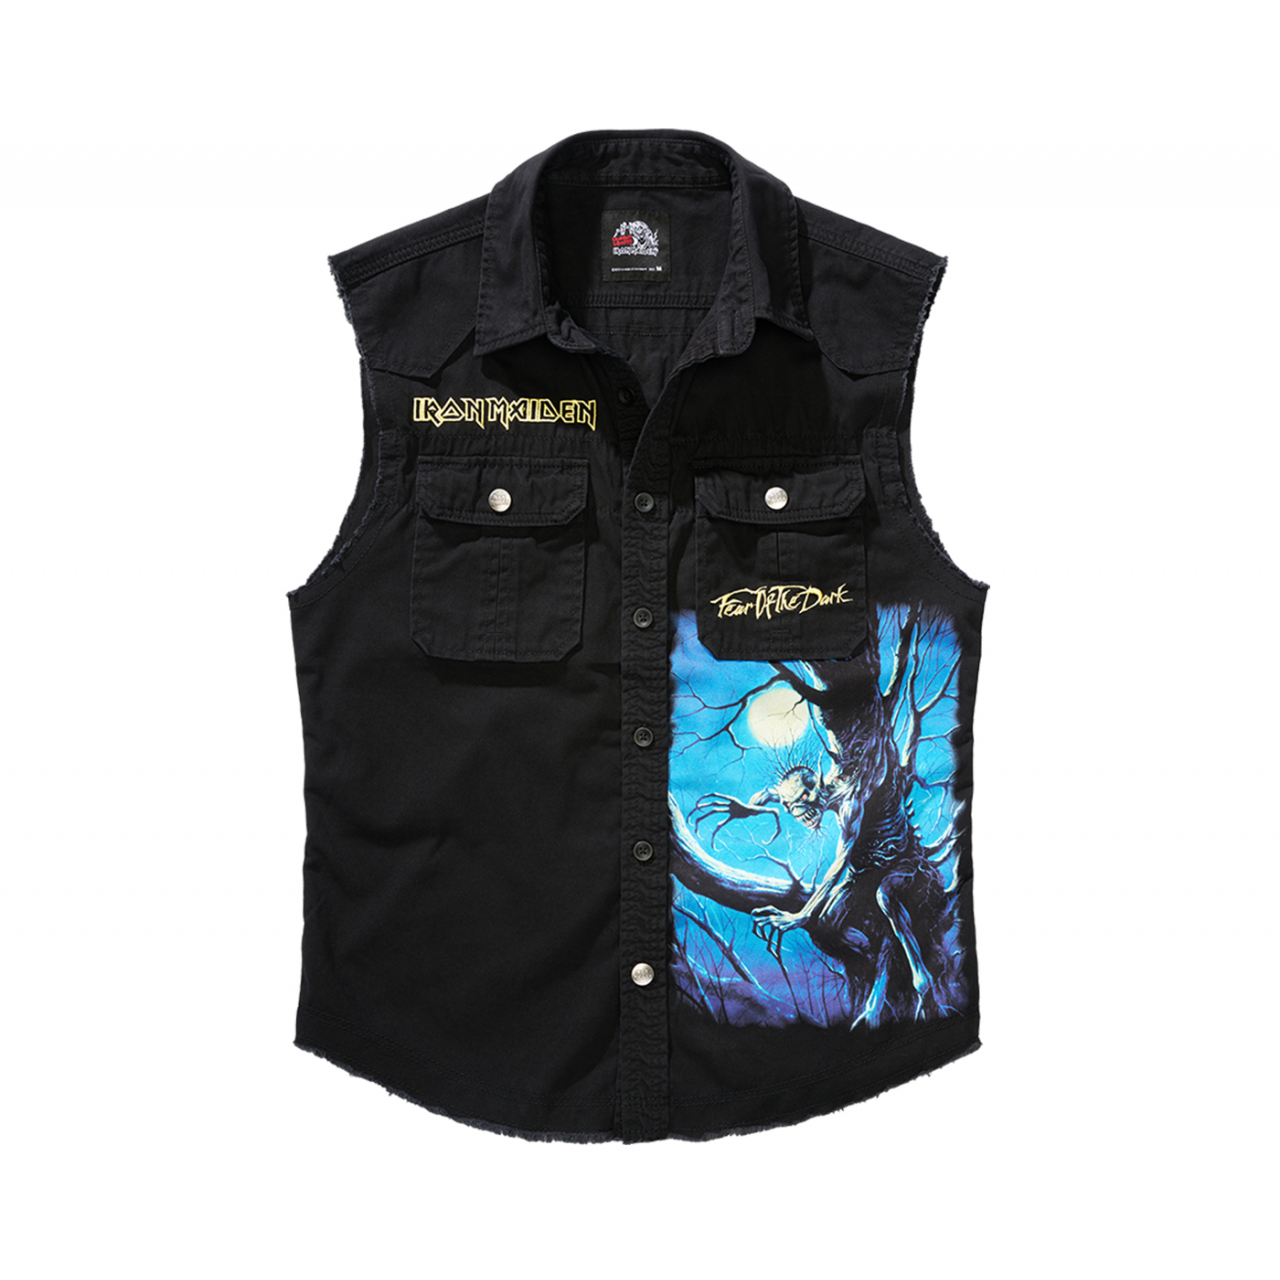 Košile Brandit Iron Maiden Vintage Shirt Sleeveless FOTD - černá, M